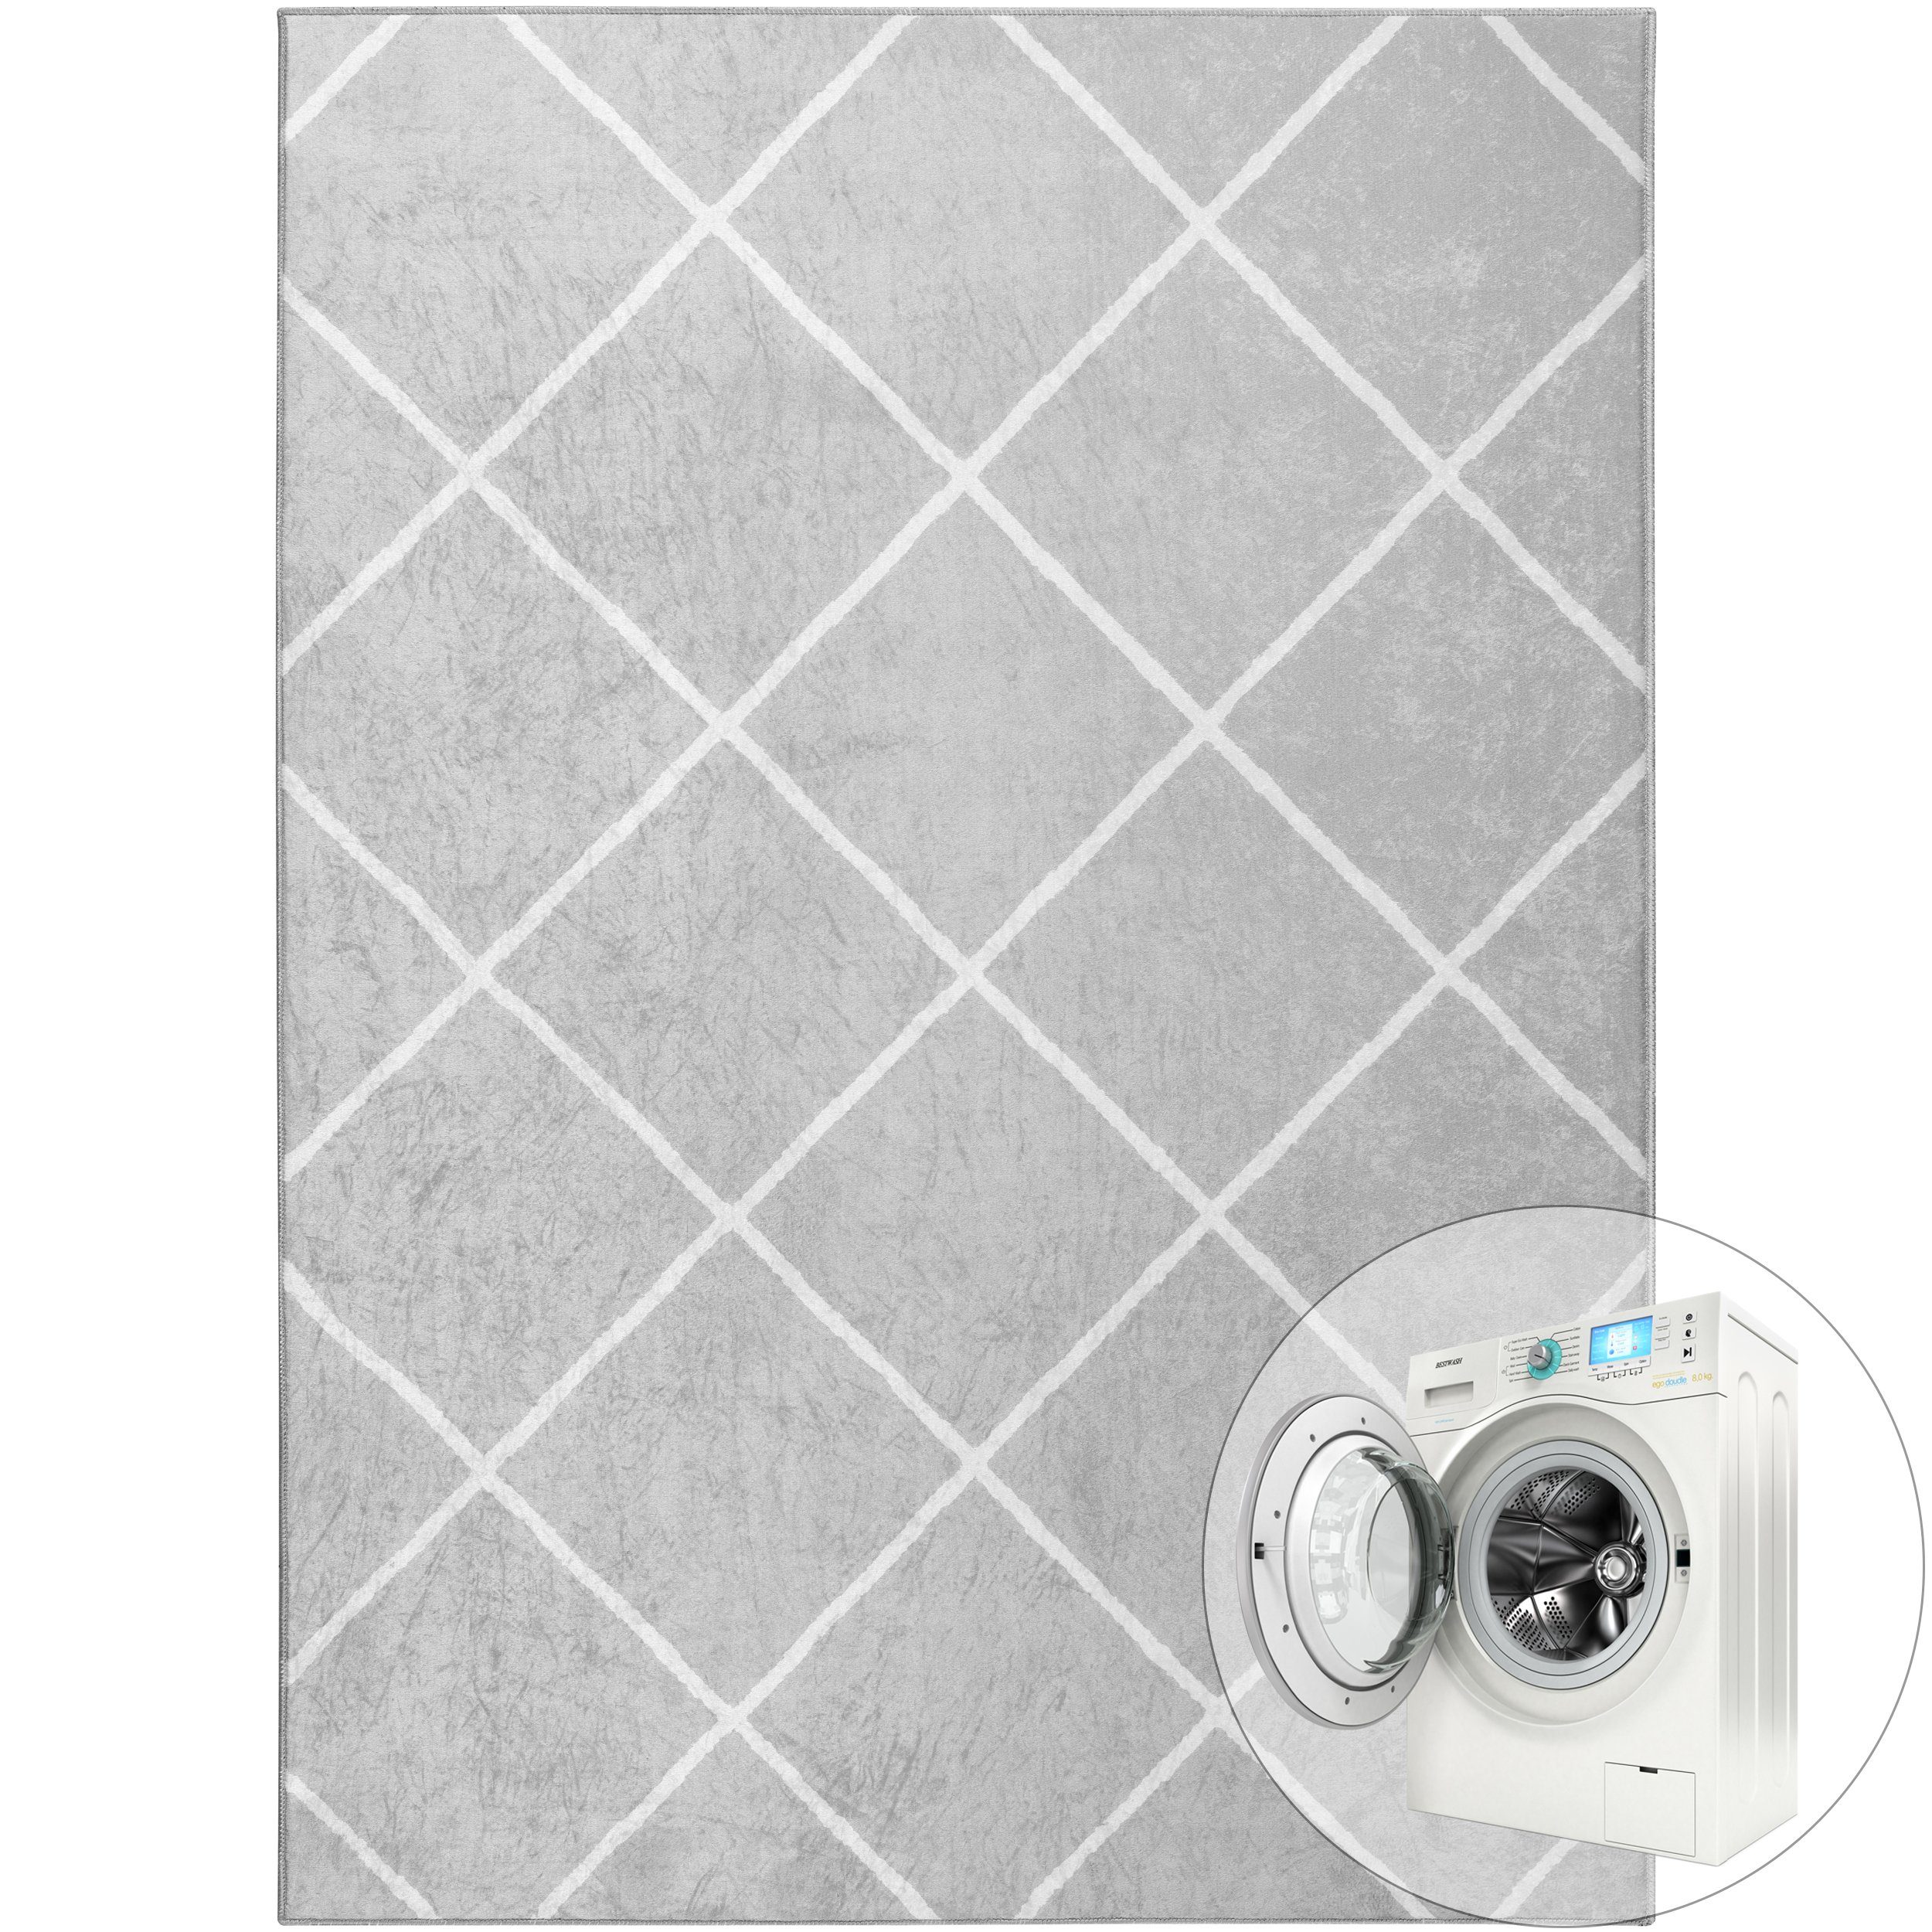 Teppich Waschbare Teppiche Wohnzimmer Waschbar in der Waschmaschine Anti Slip, Mynes Home, Grau, Geometrisch, Raute